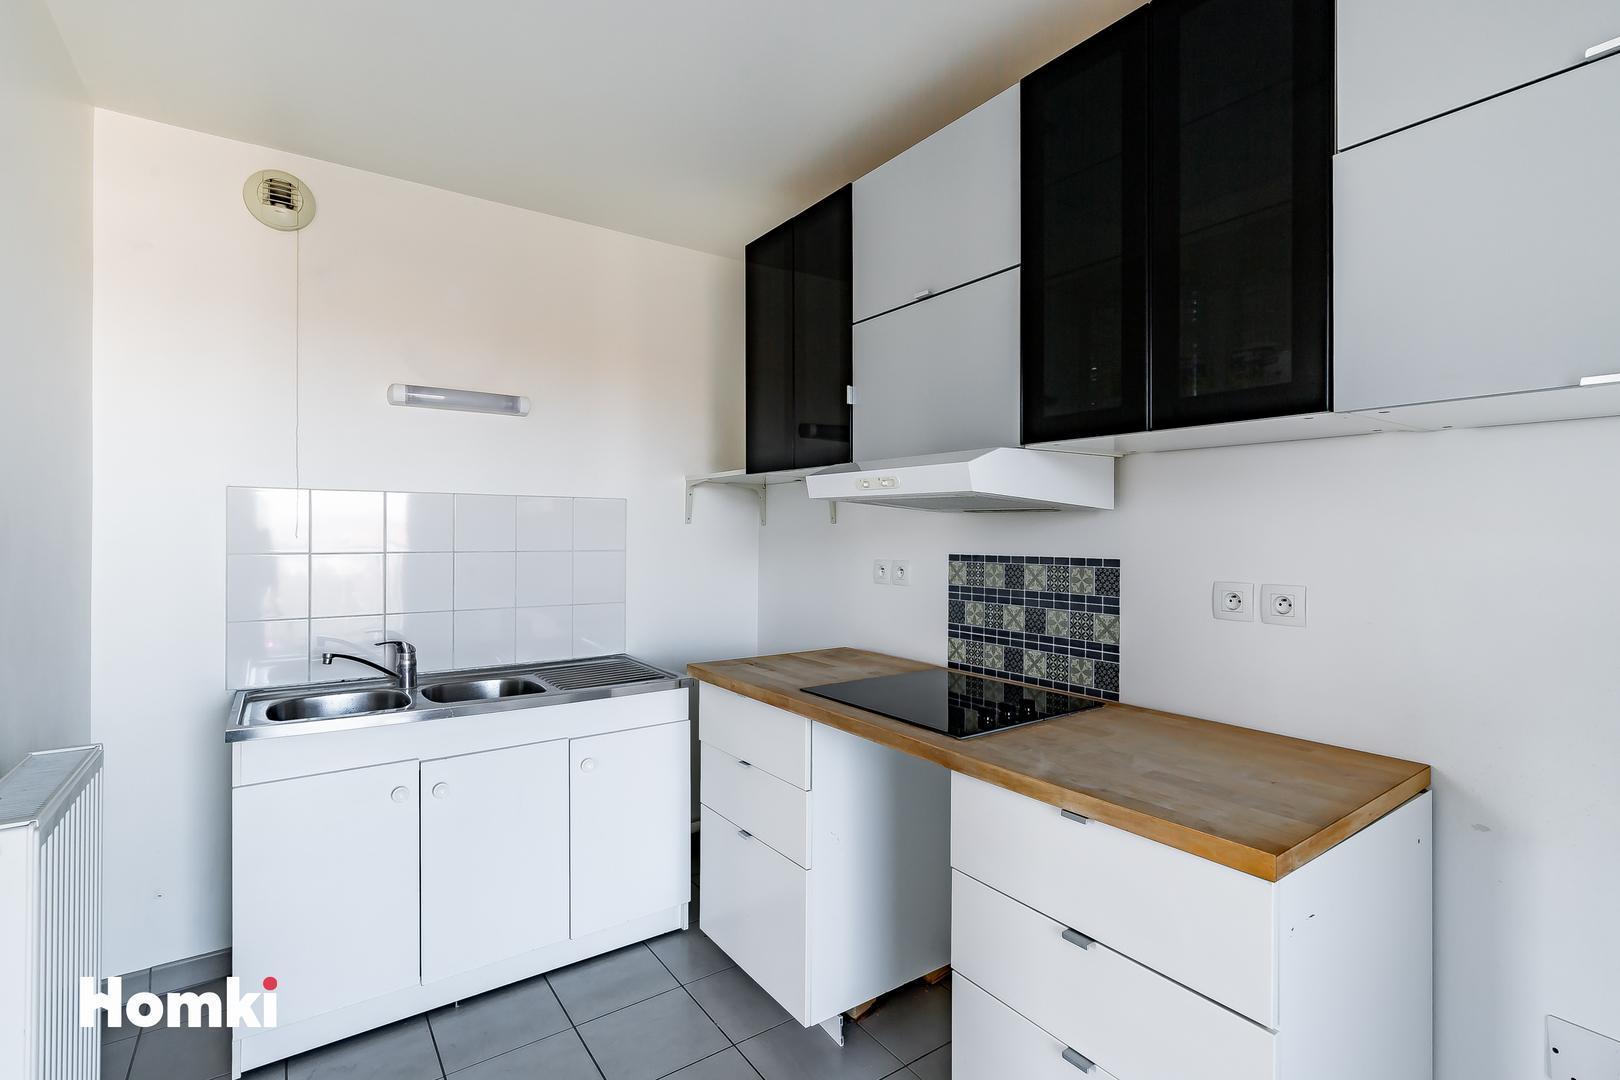 Homki - Vente Appartement  de 98.0 m² à Bordeaux 33300